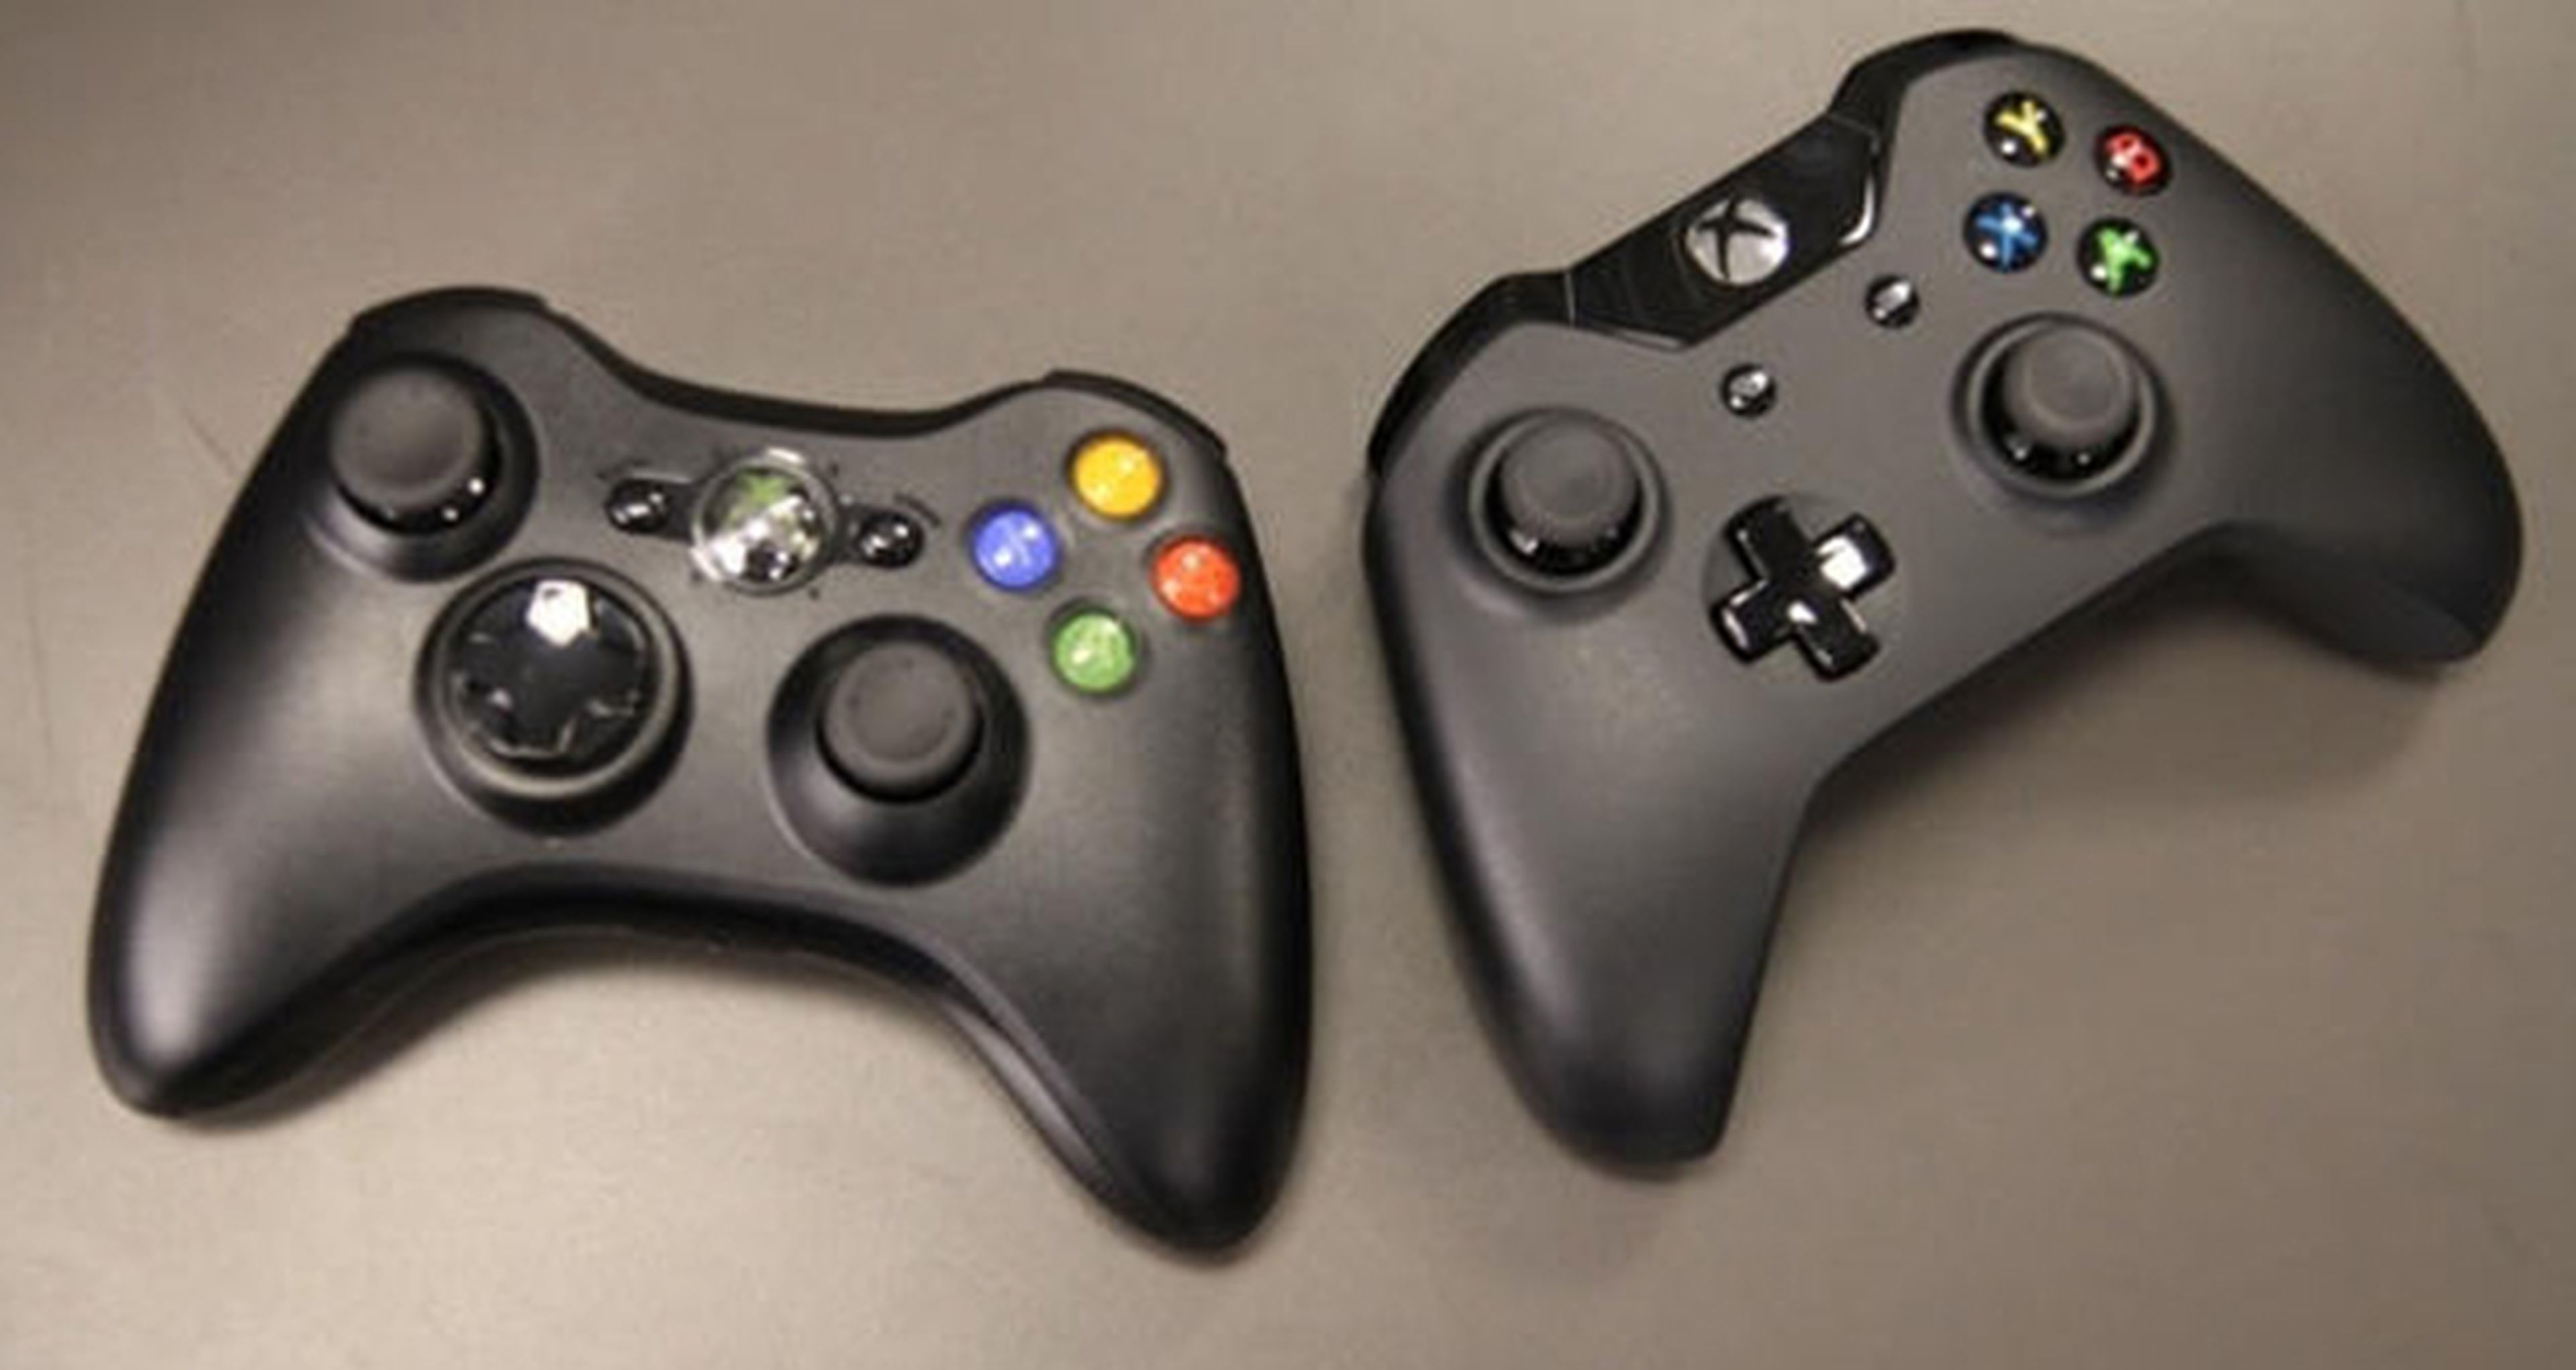 ¿Por qué llega la retrocompabilidad a Xbox One?